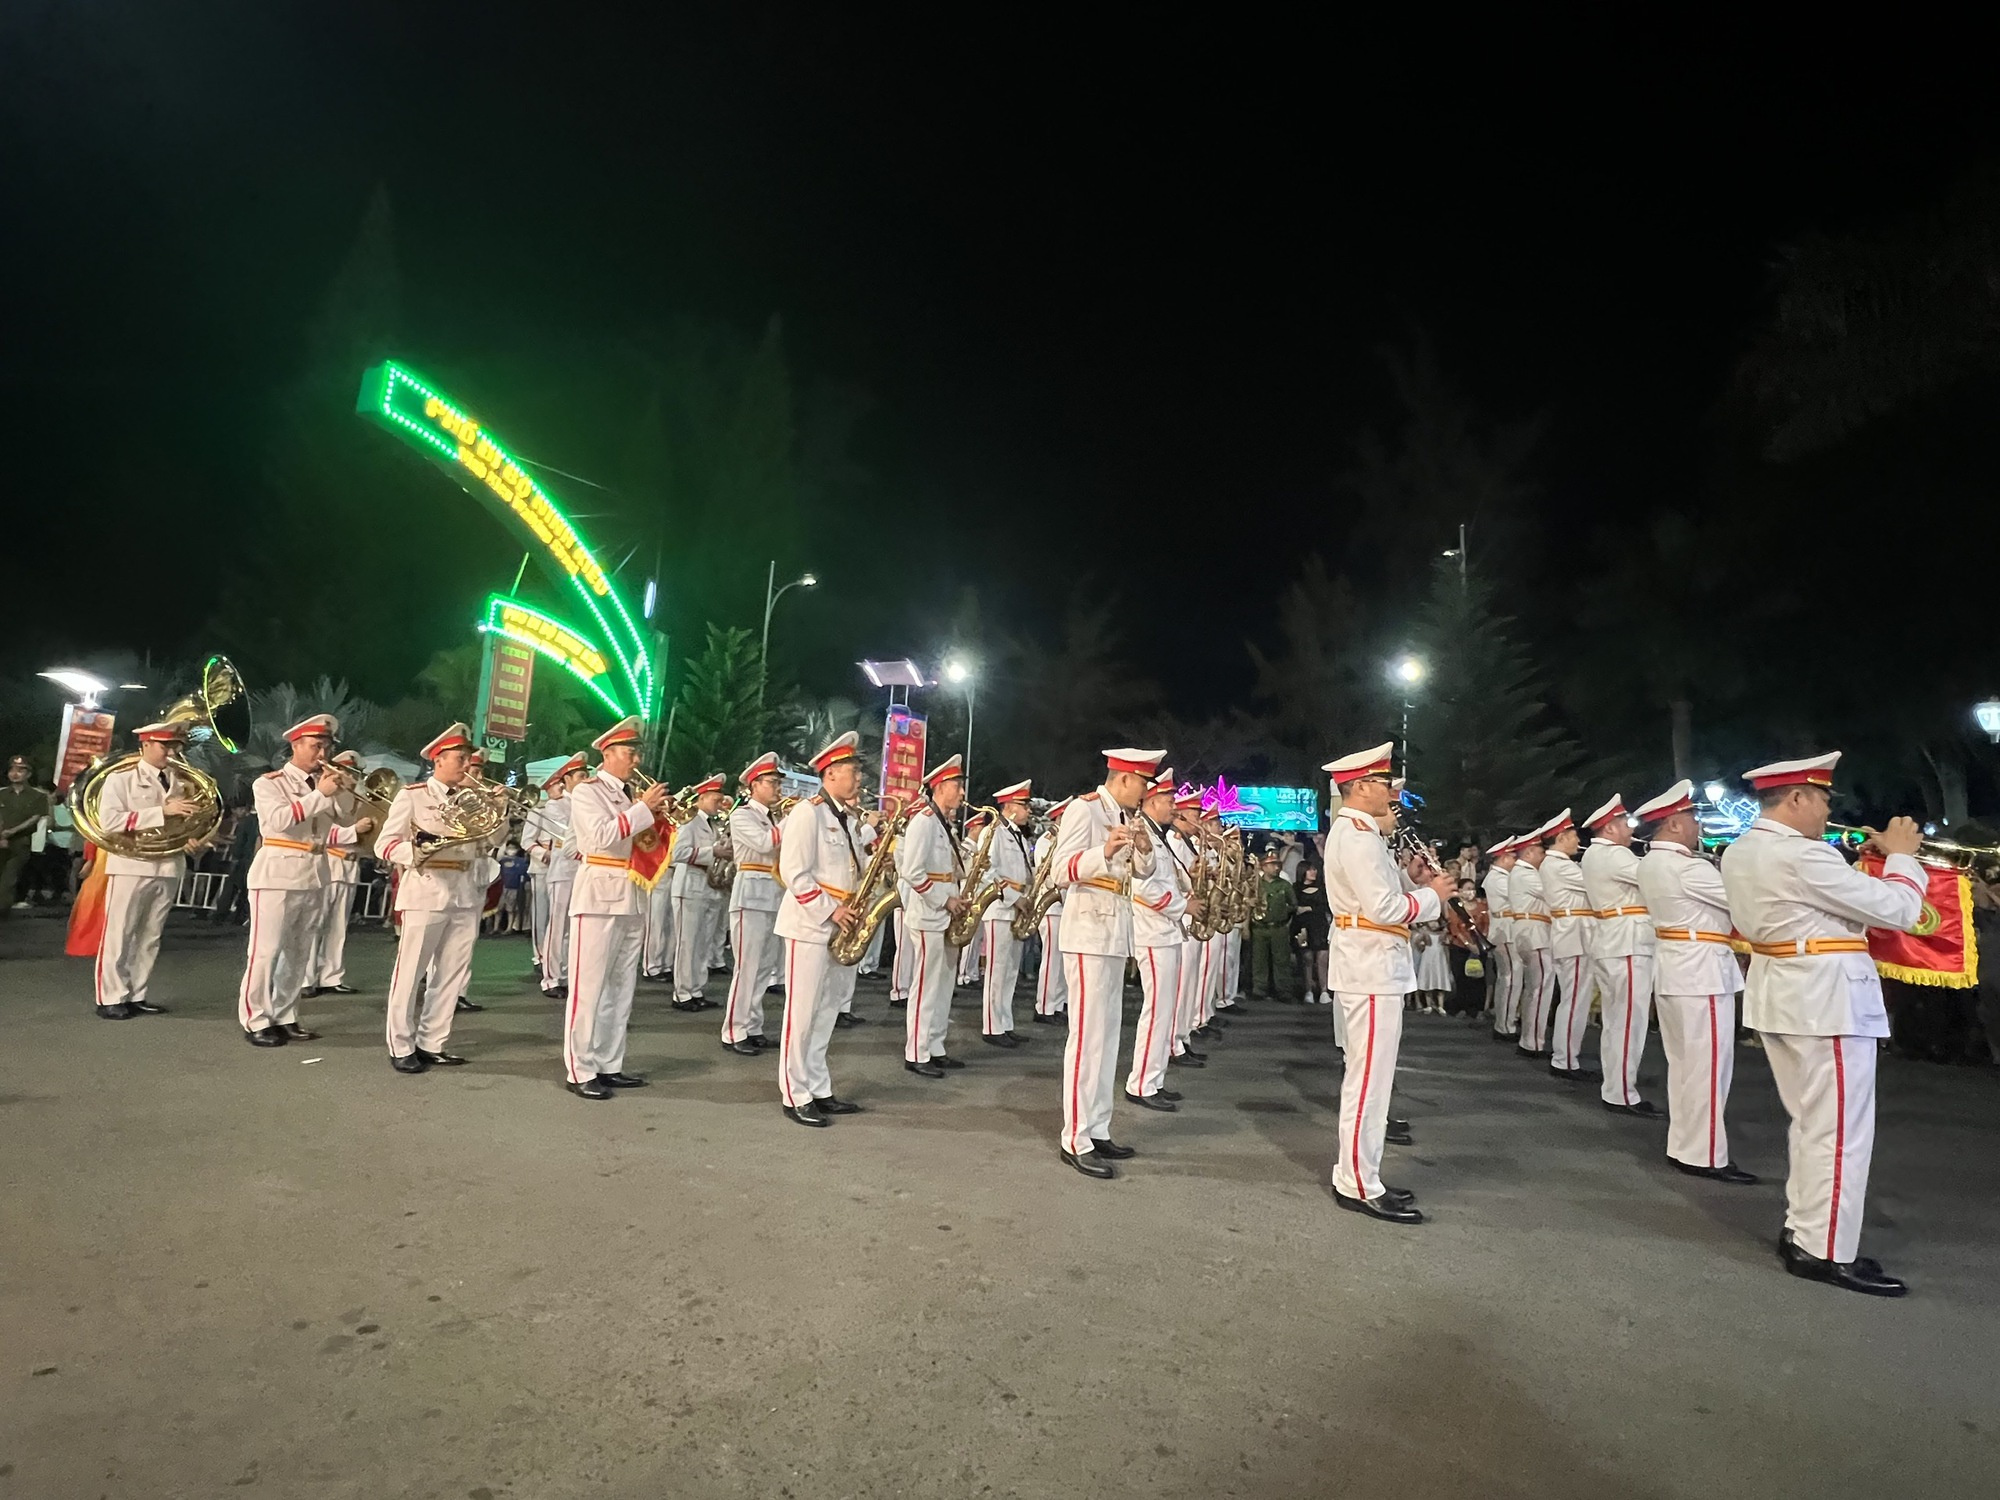 CLIP: Đoàn nghi lễ Công an nhân dân biểu diễn tại bến Ninh Kiều - Ảnh 8.